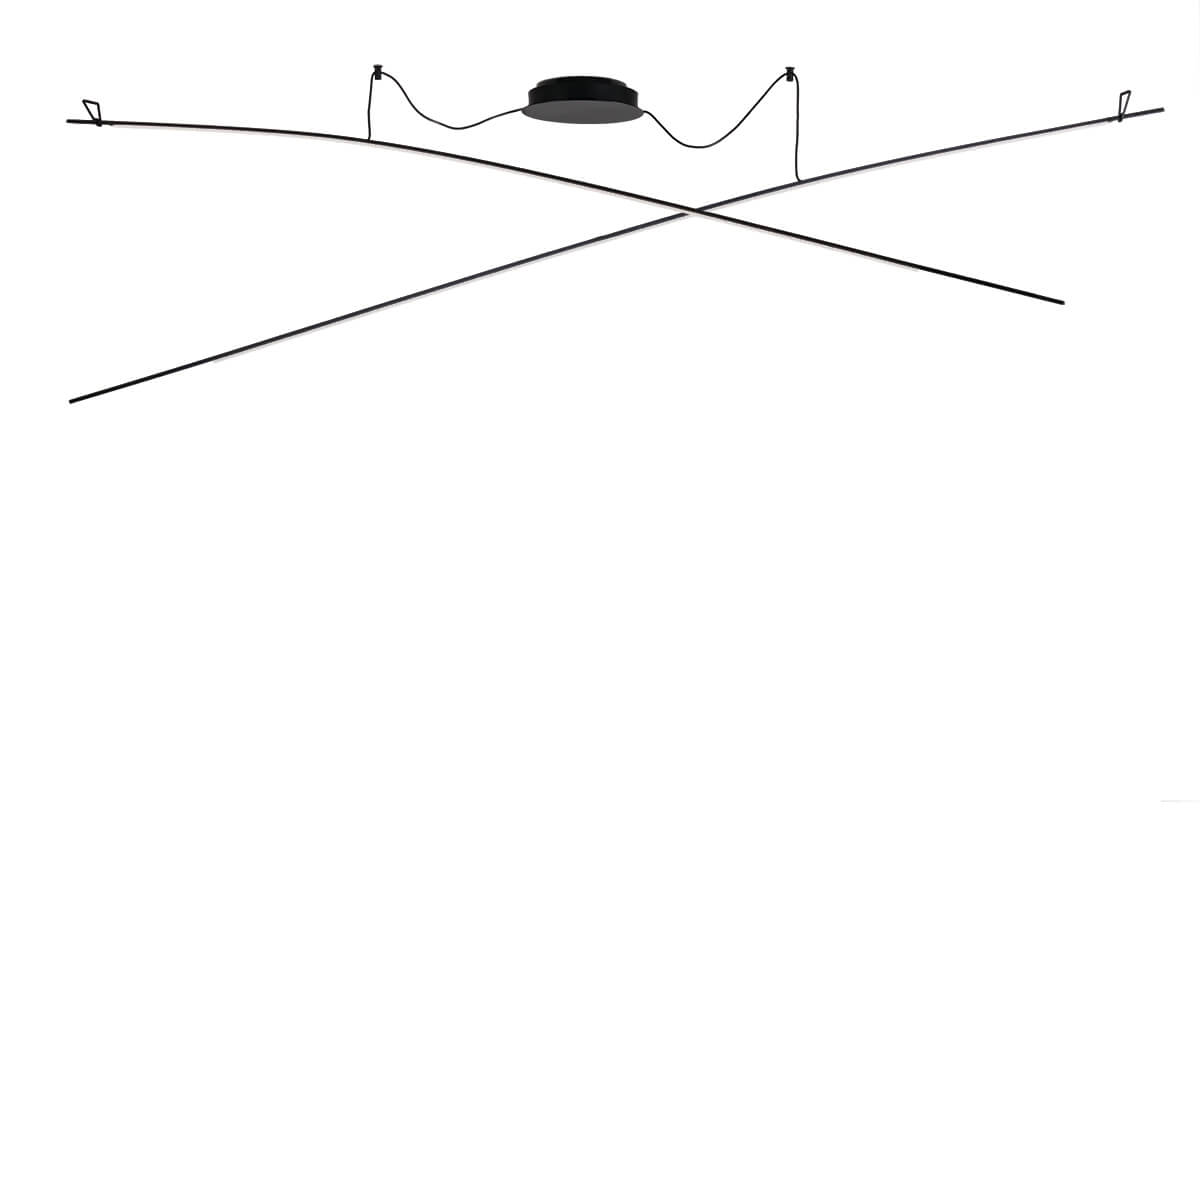 RITA CROSS - Suspension 2 x 200 cm